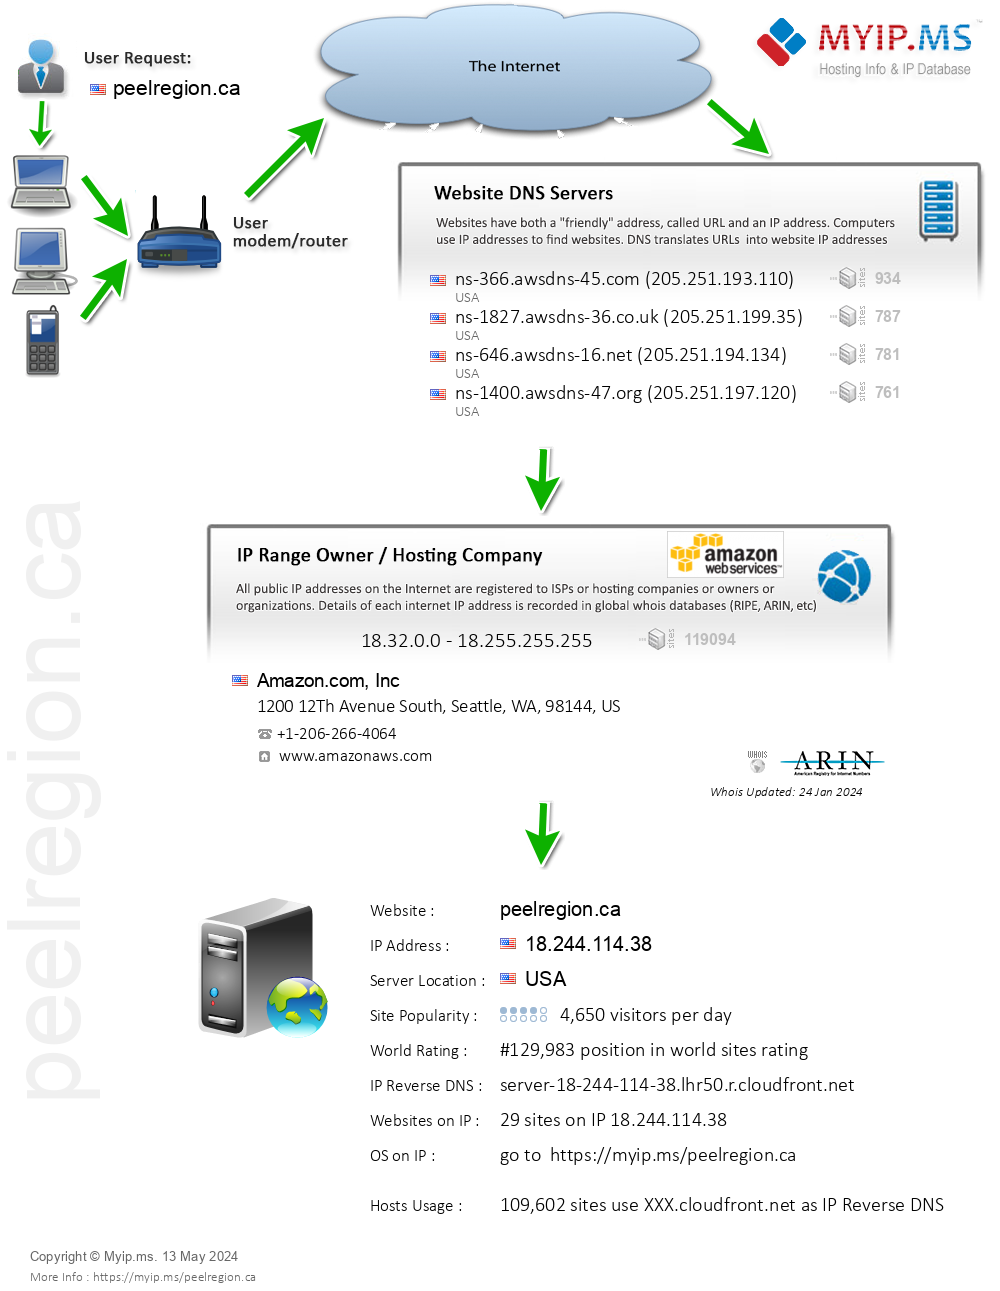 Peelregion.ca - Website Hosting Visual IP Diagram